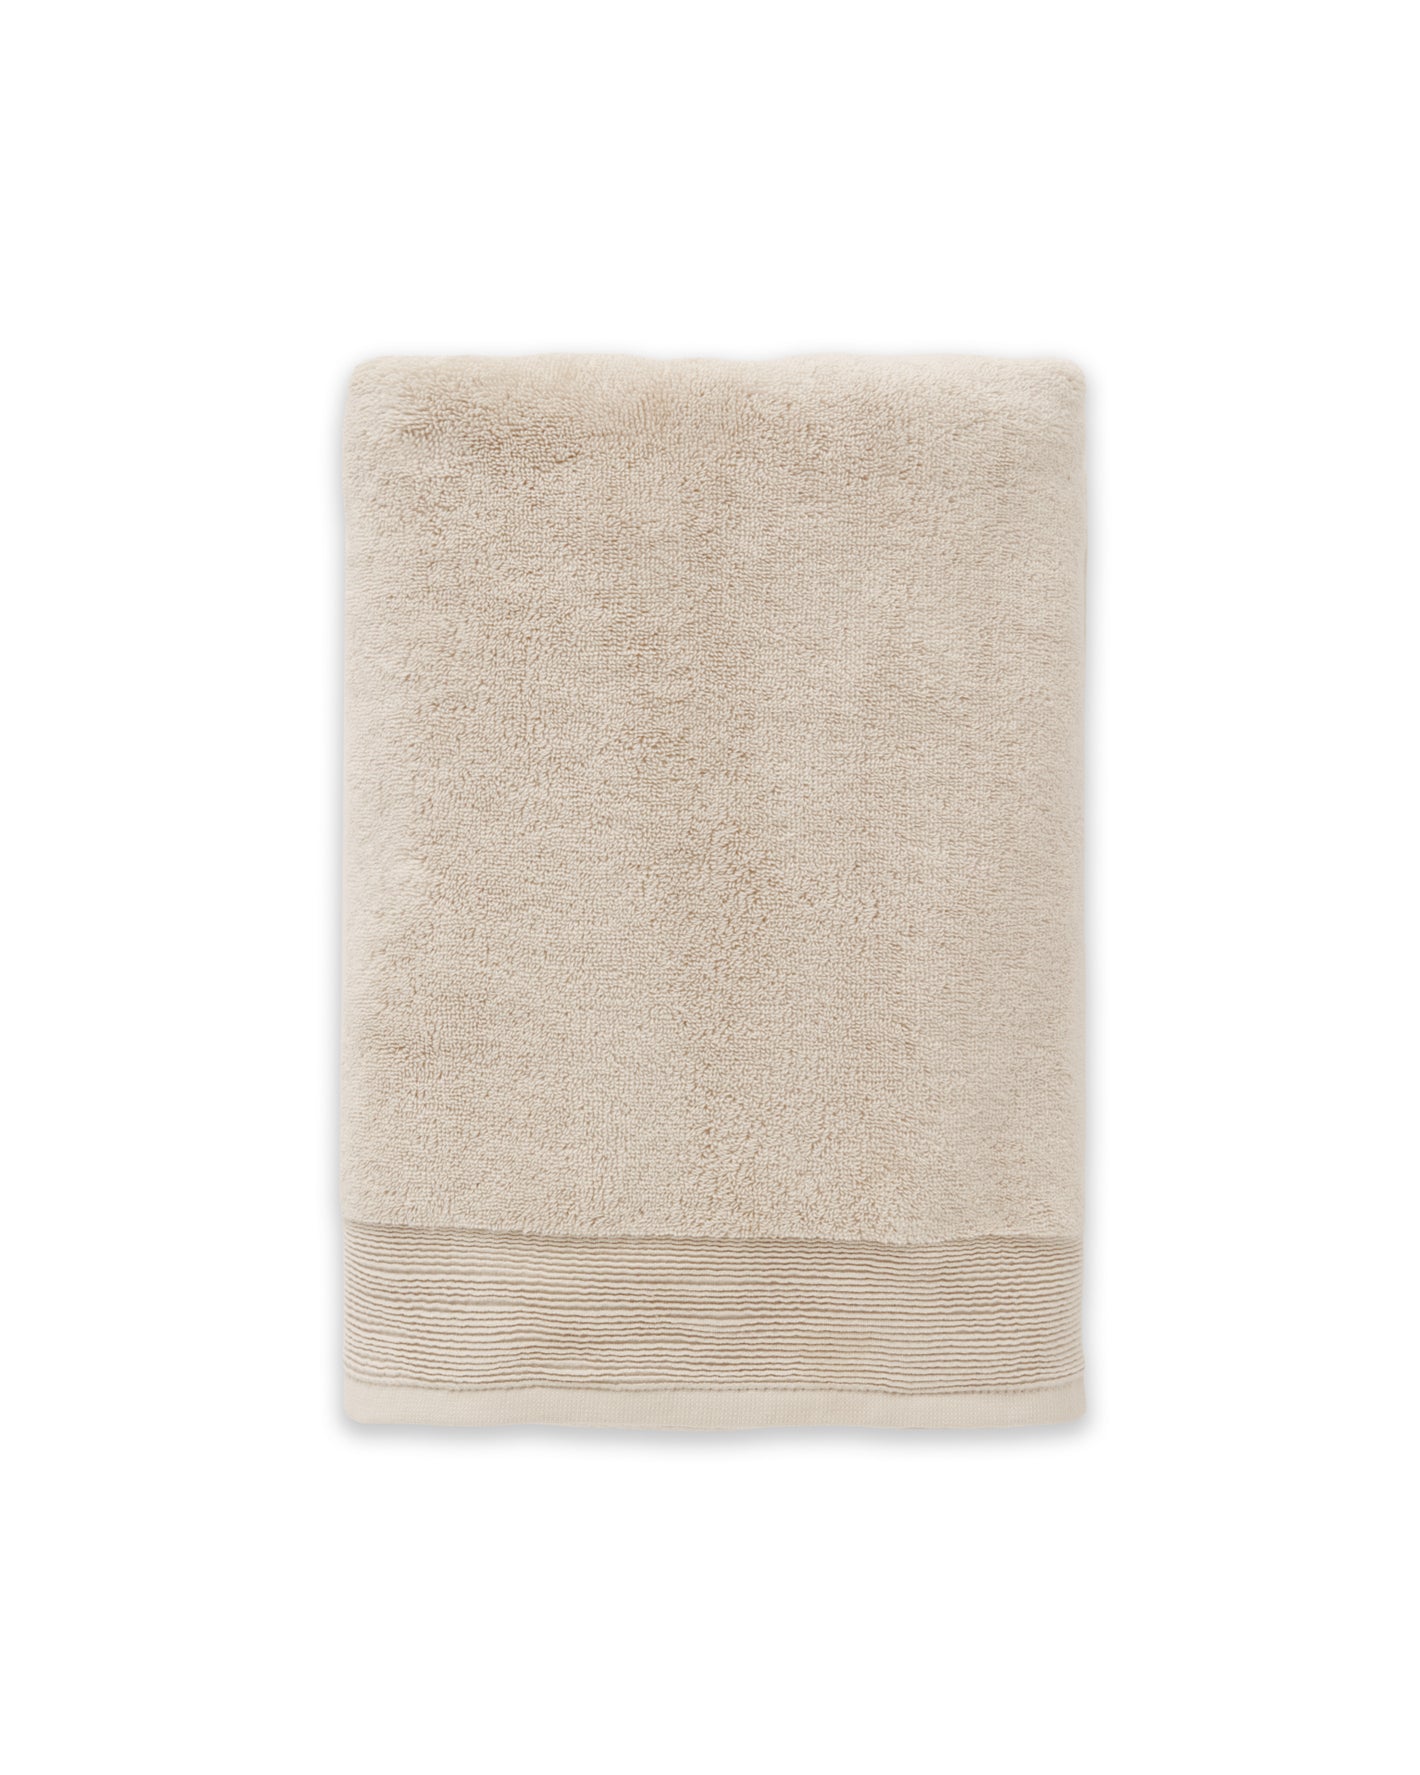 Plush towel in Oatmeal #color_oatmeal